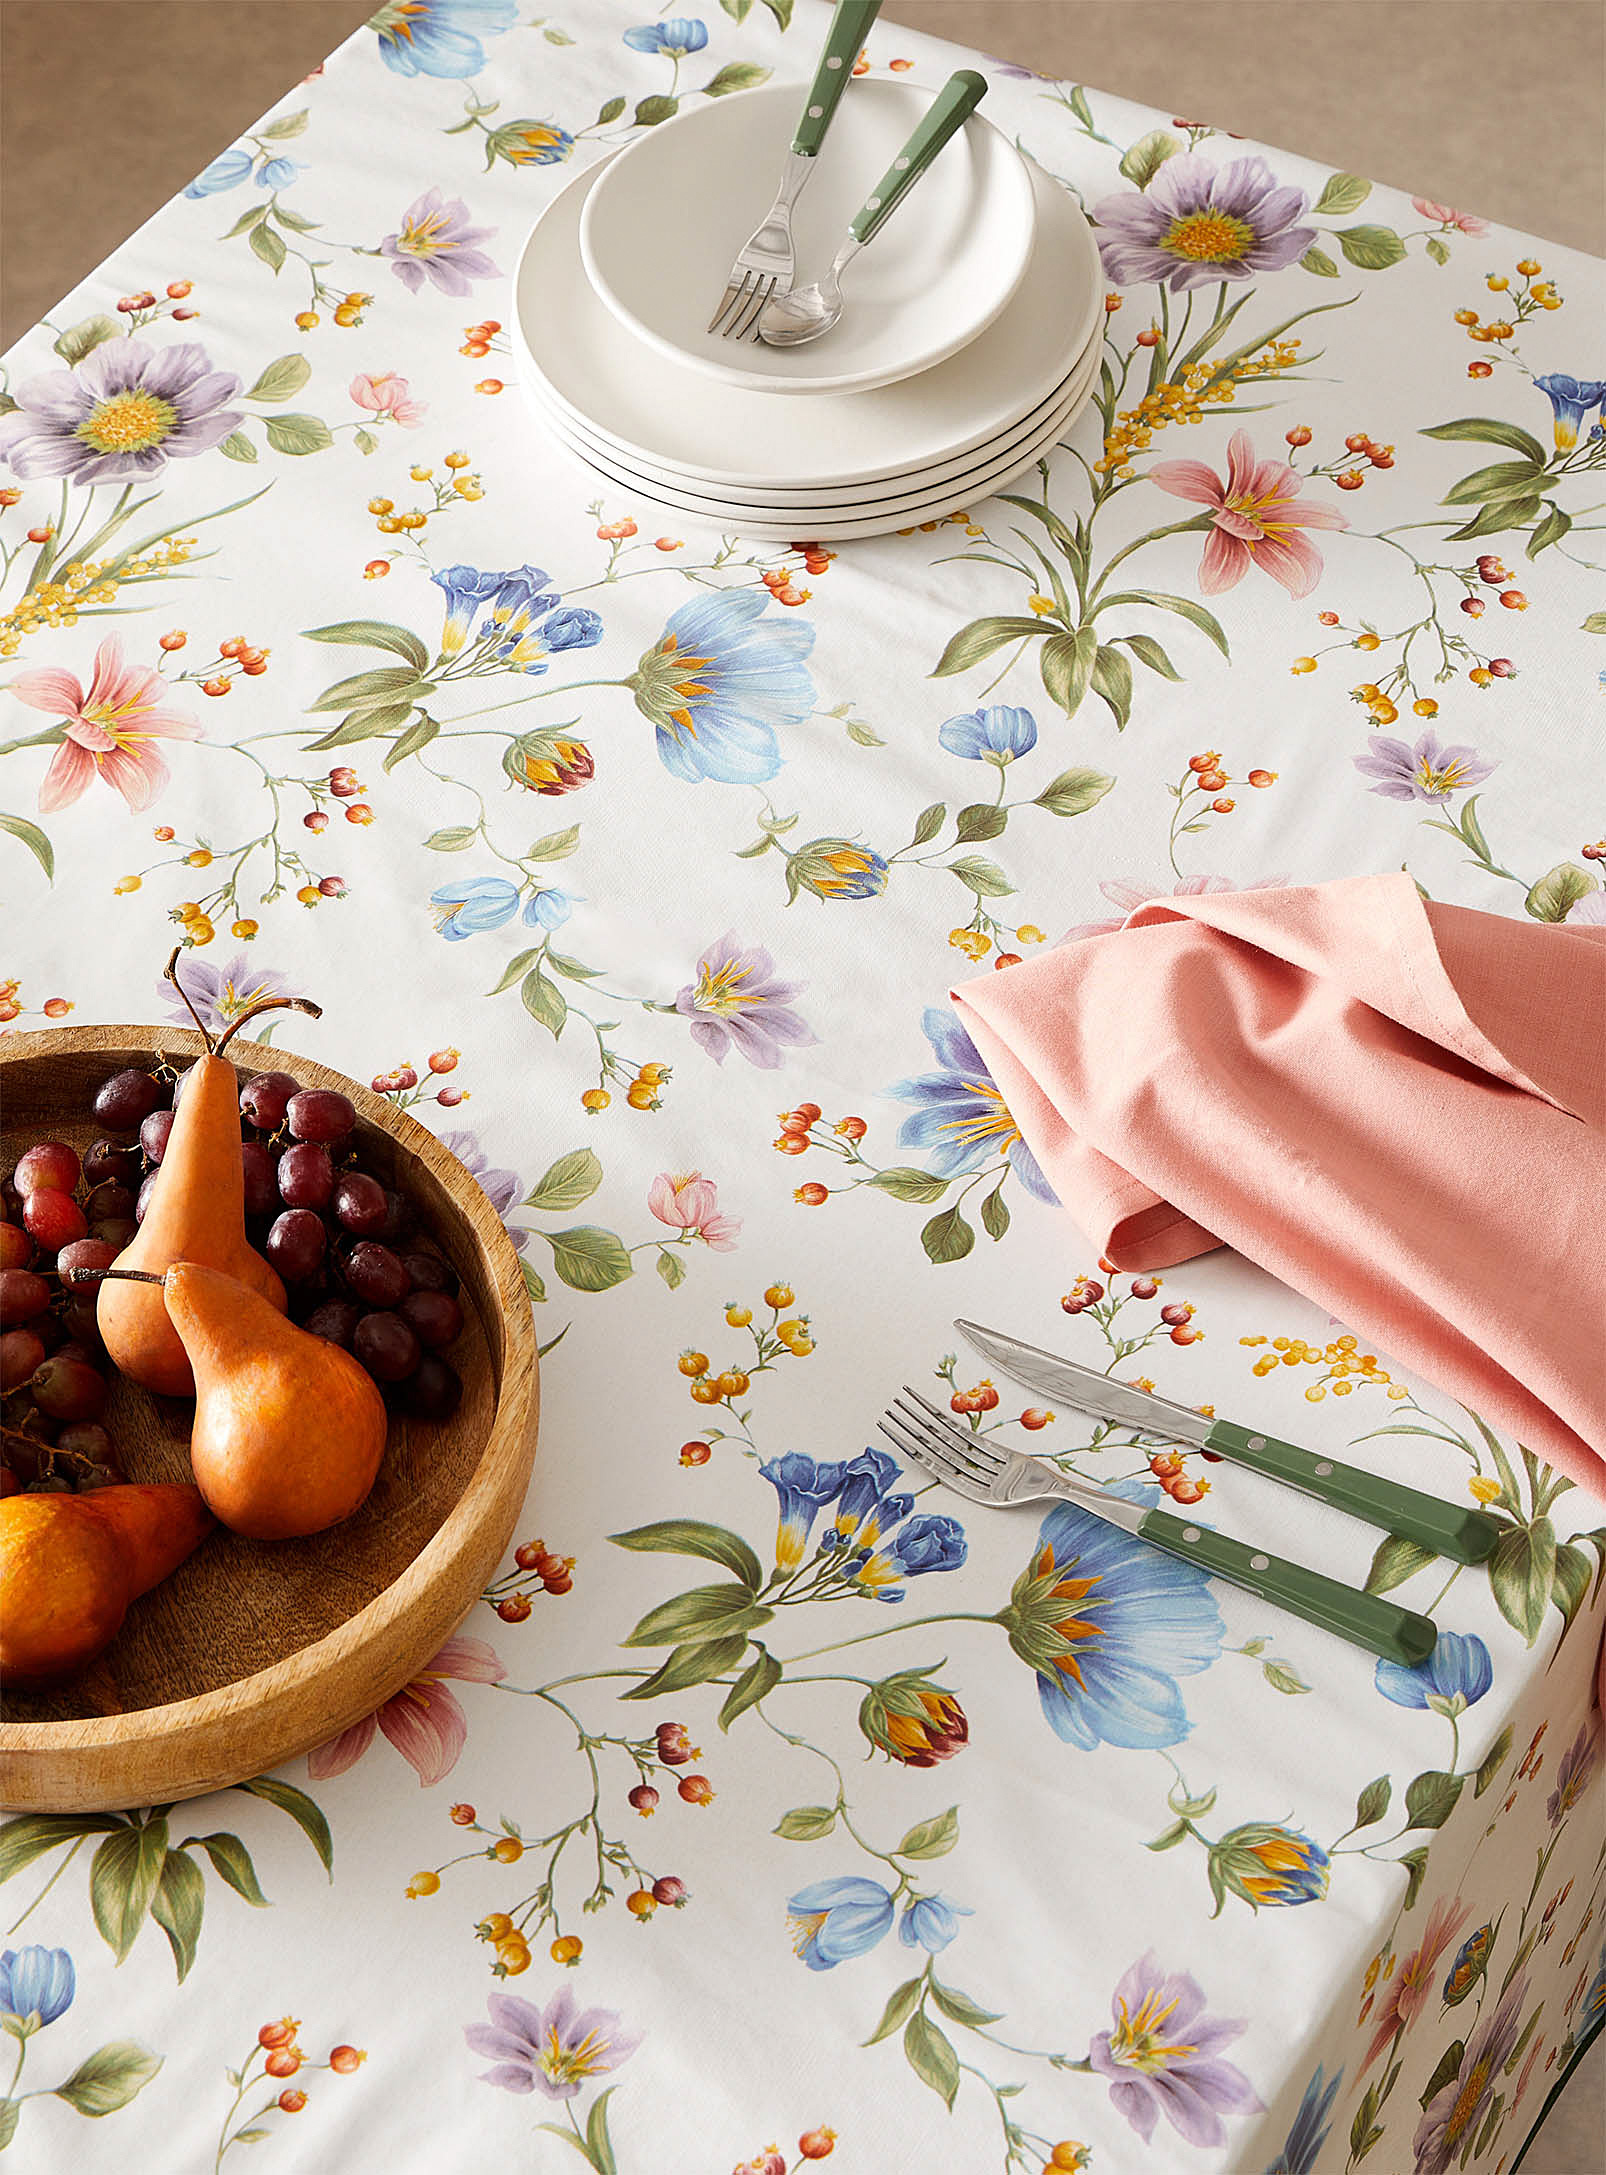 Simons Maison - Floral garden vinyl tablecloth